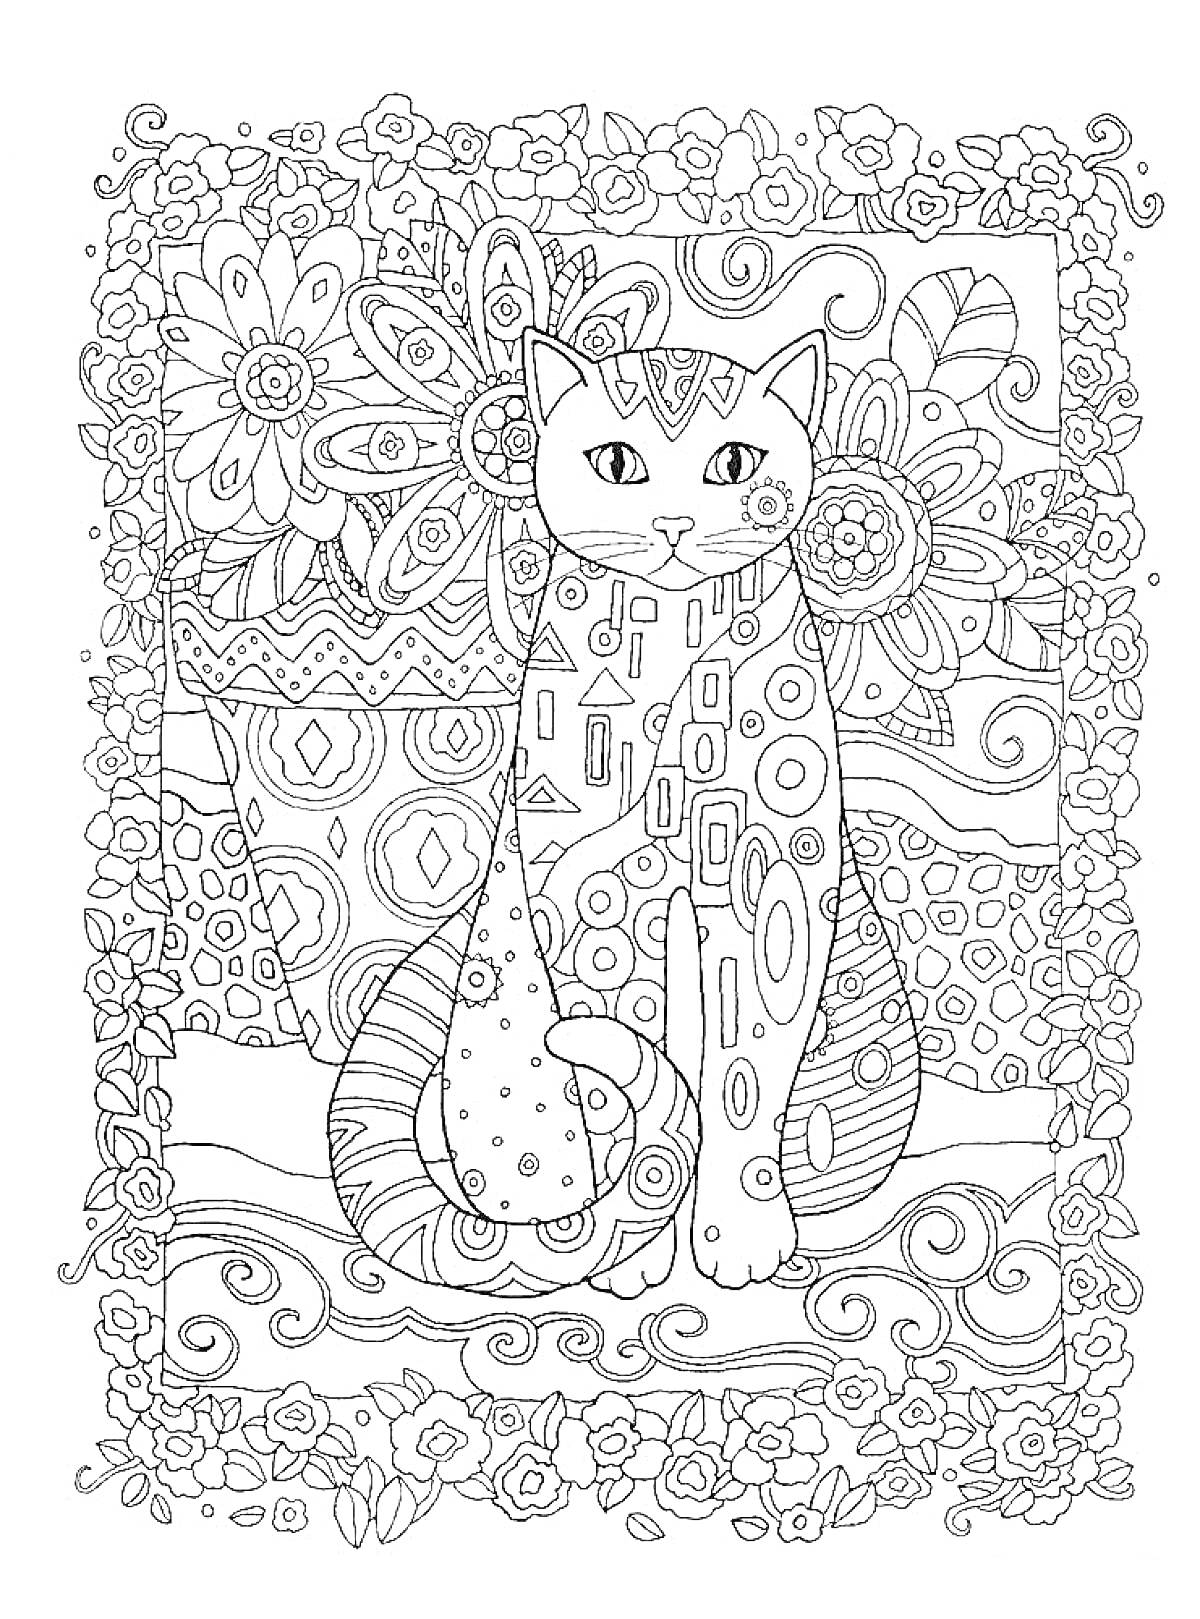 Раскраска Кошка с детализированным узором, окруженная цветами и геометрическими элементами.